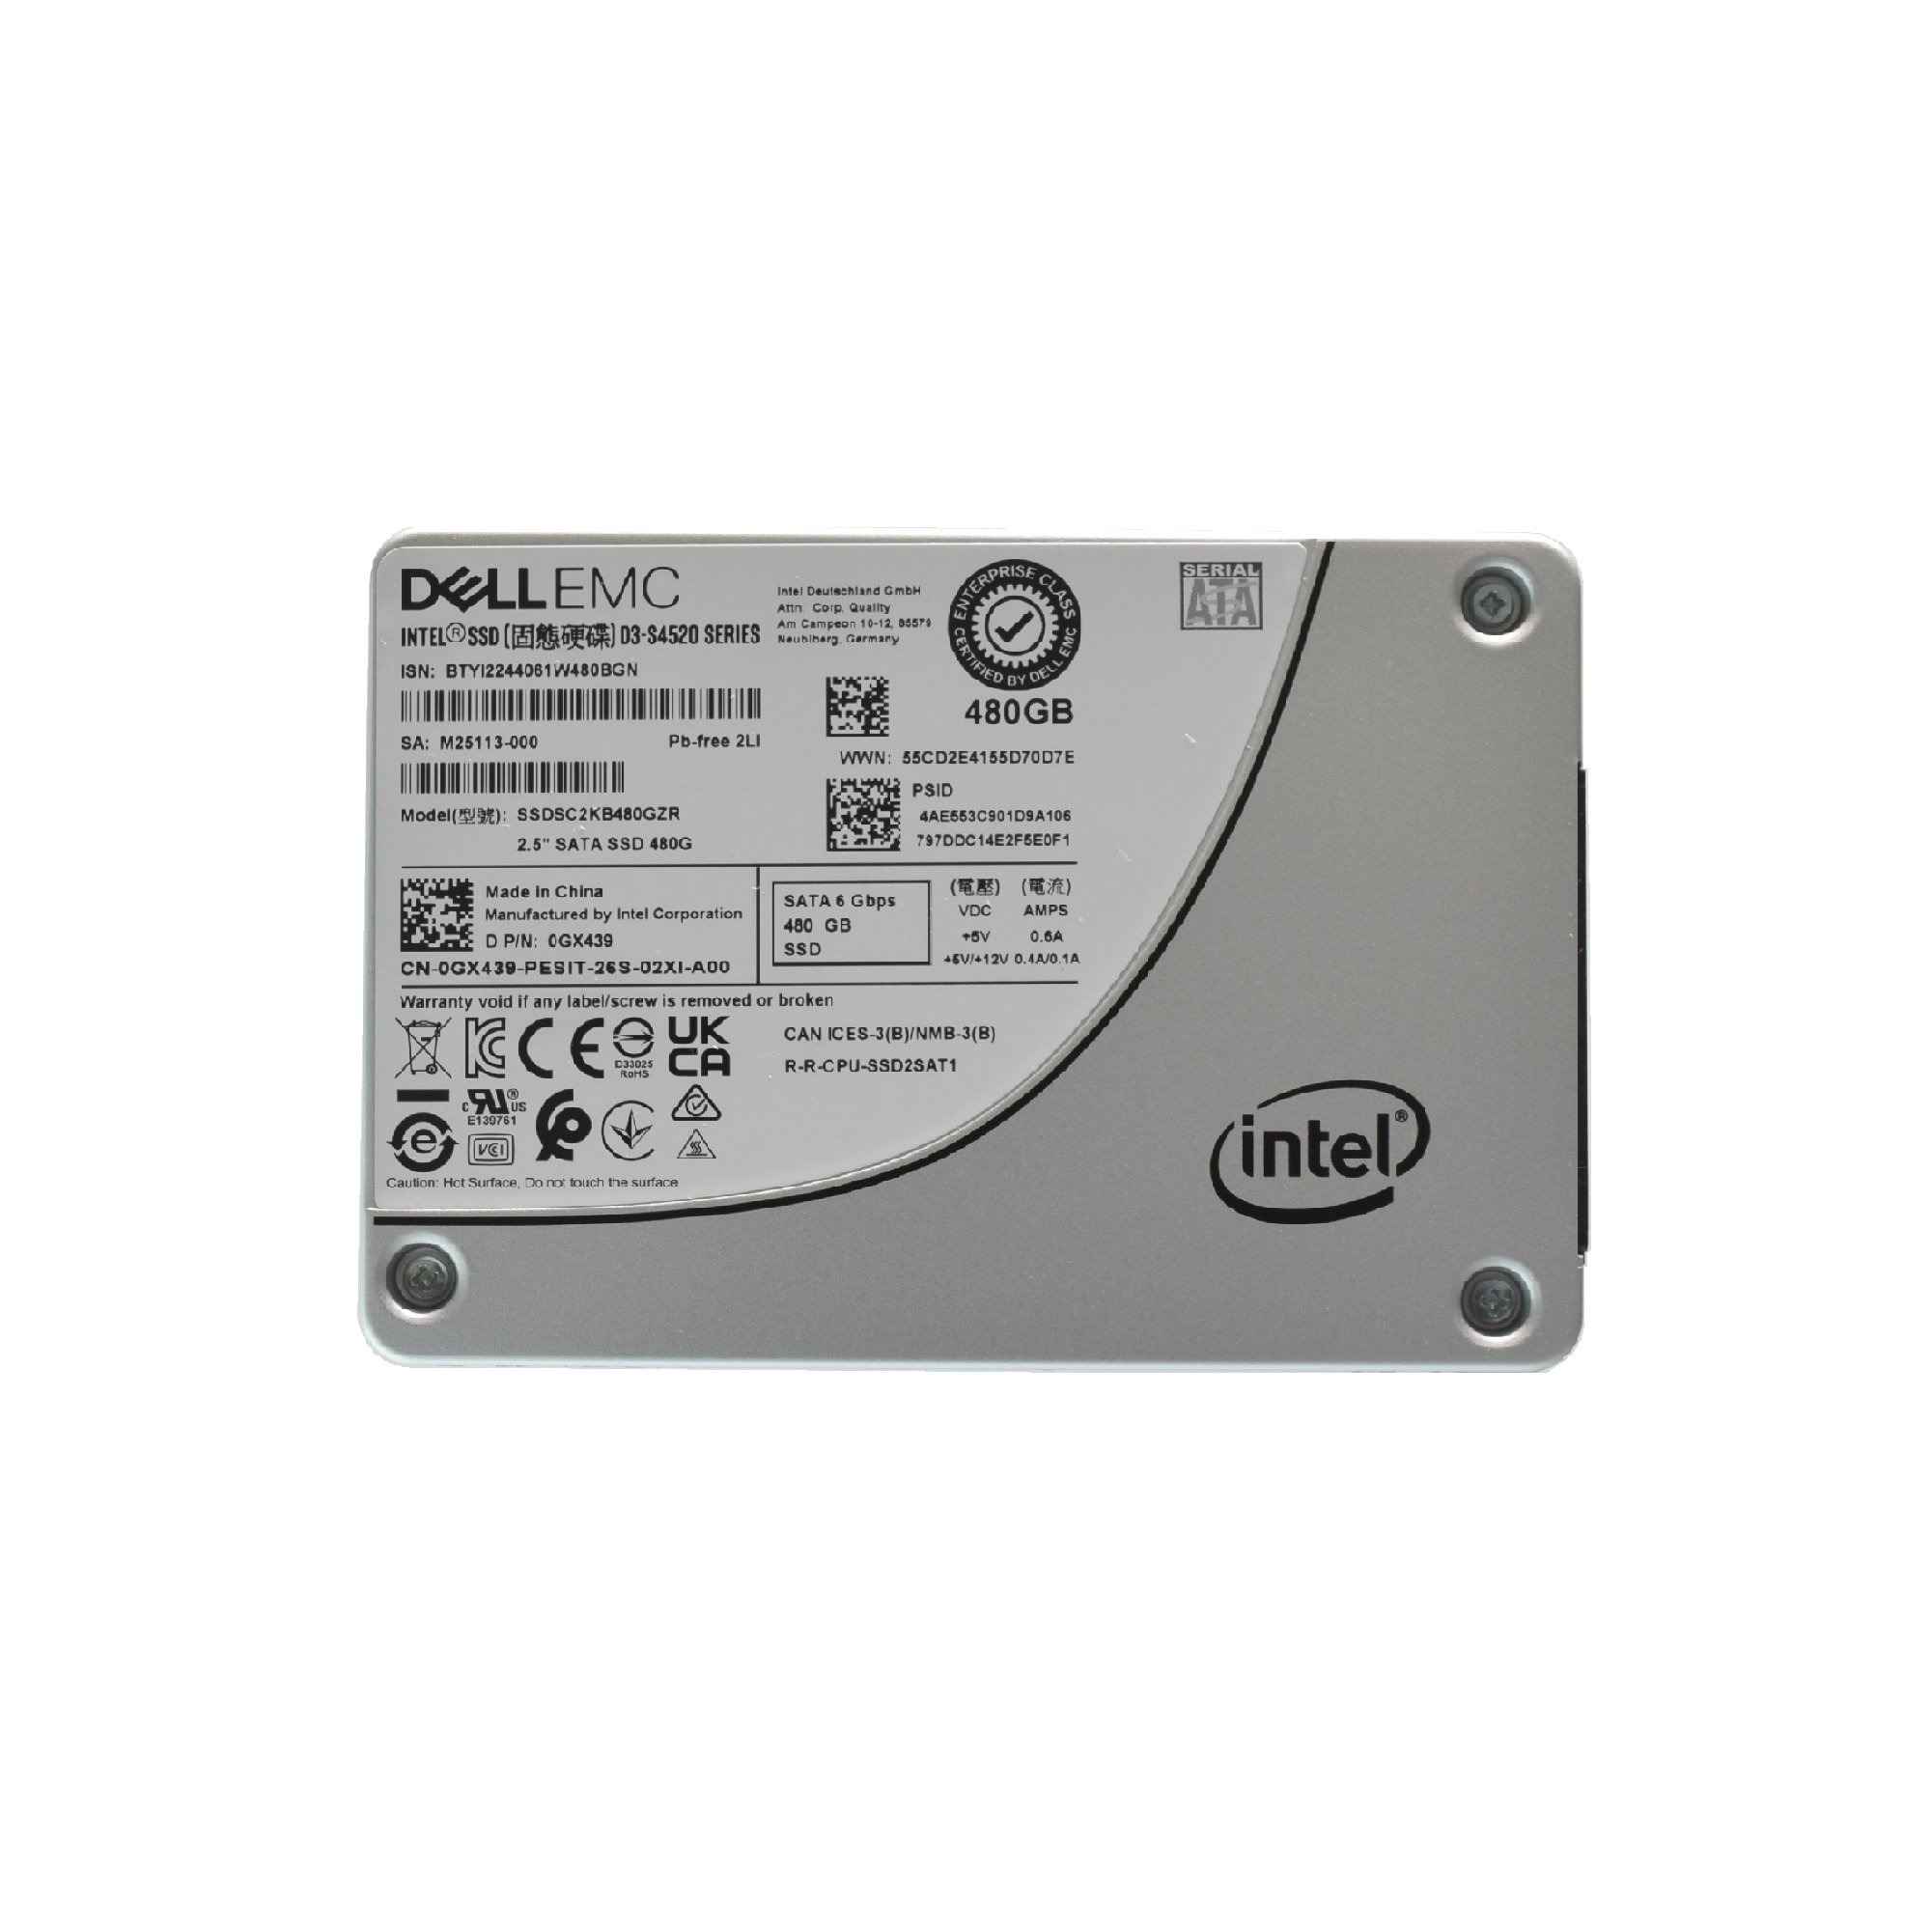 DELL EMC 2.5 GX439 480GB SATA III 6.0 Gpbs SERVER SSD SSDSC2KB480GZR